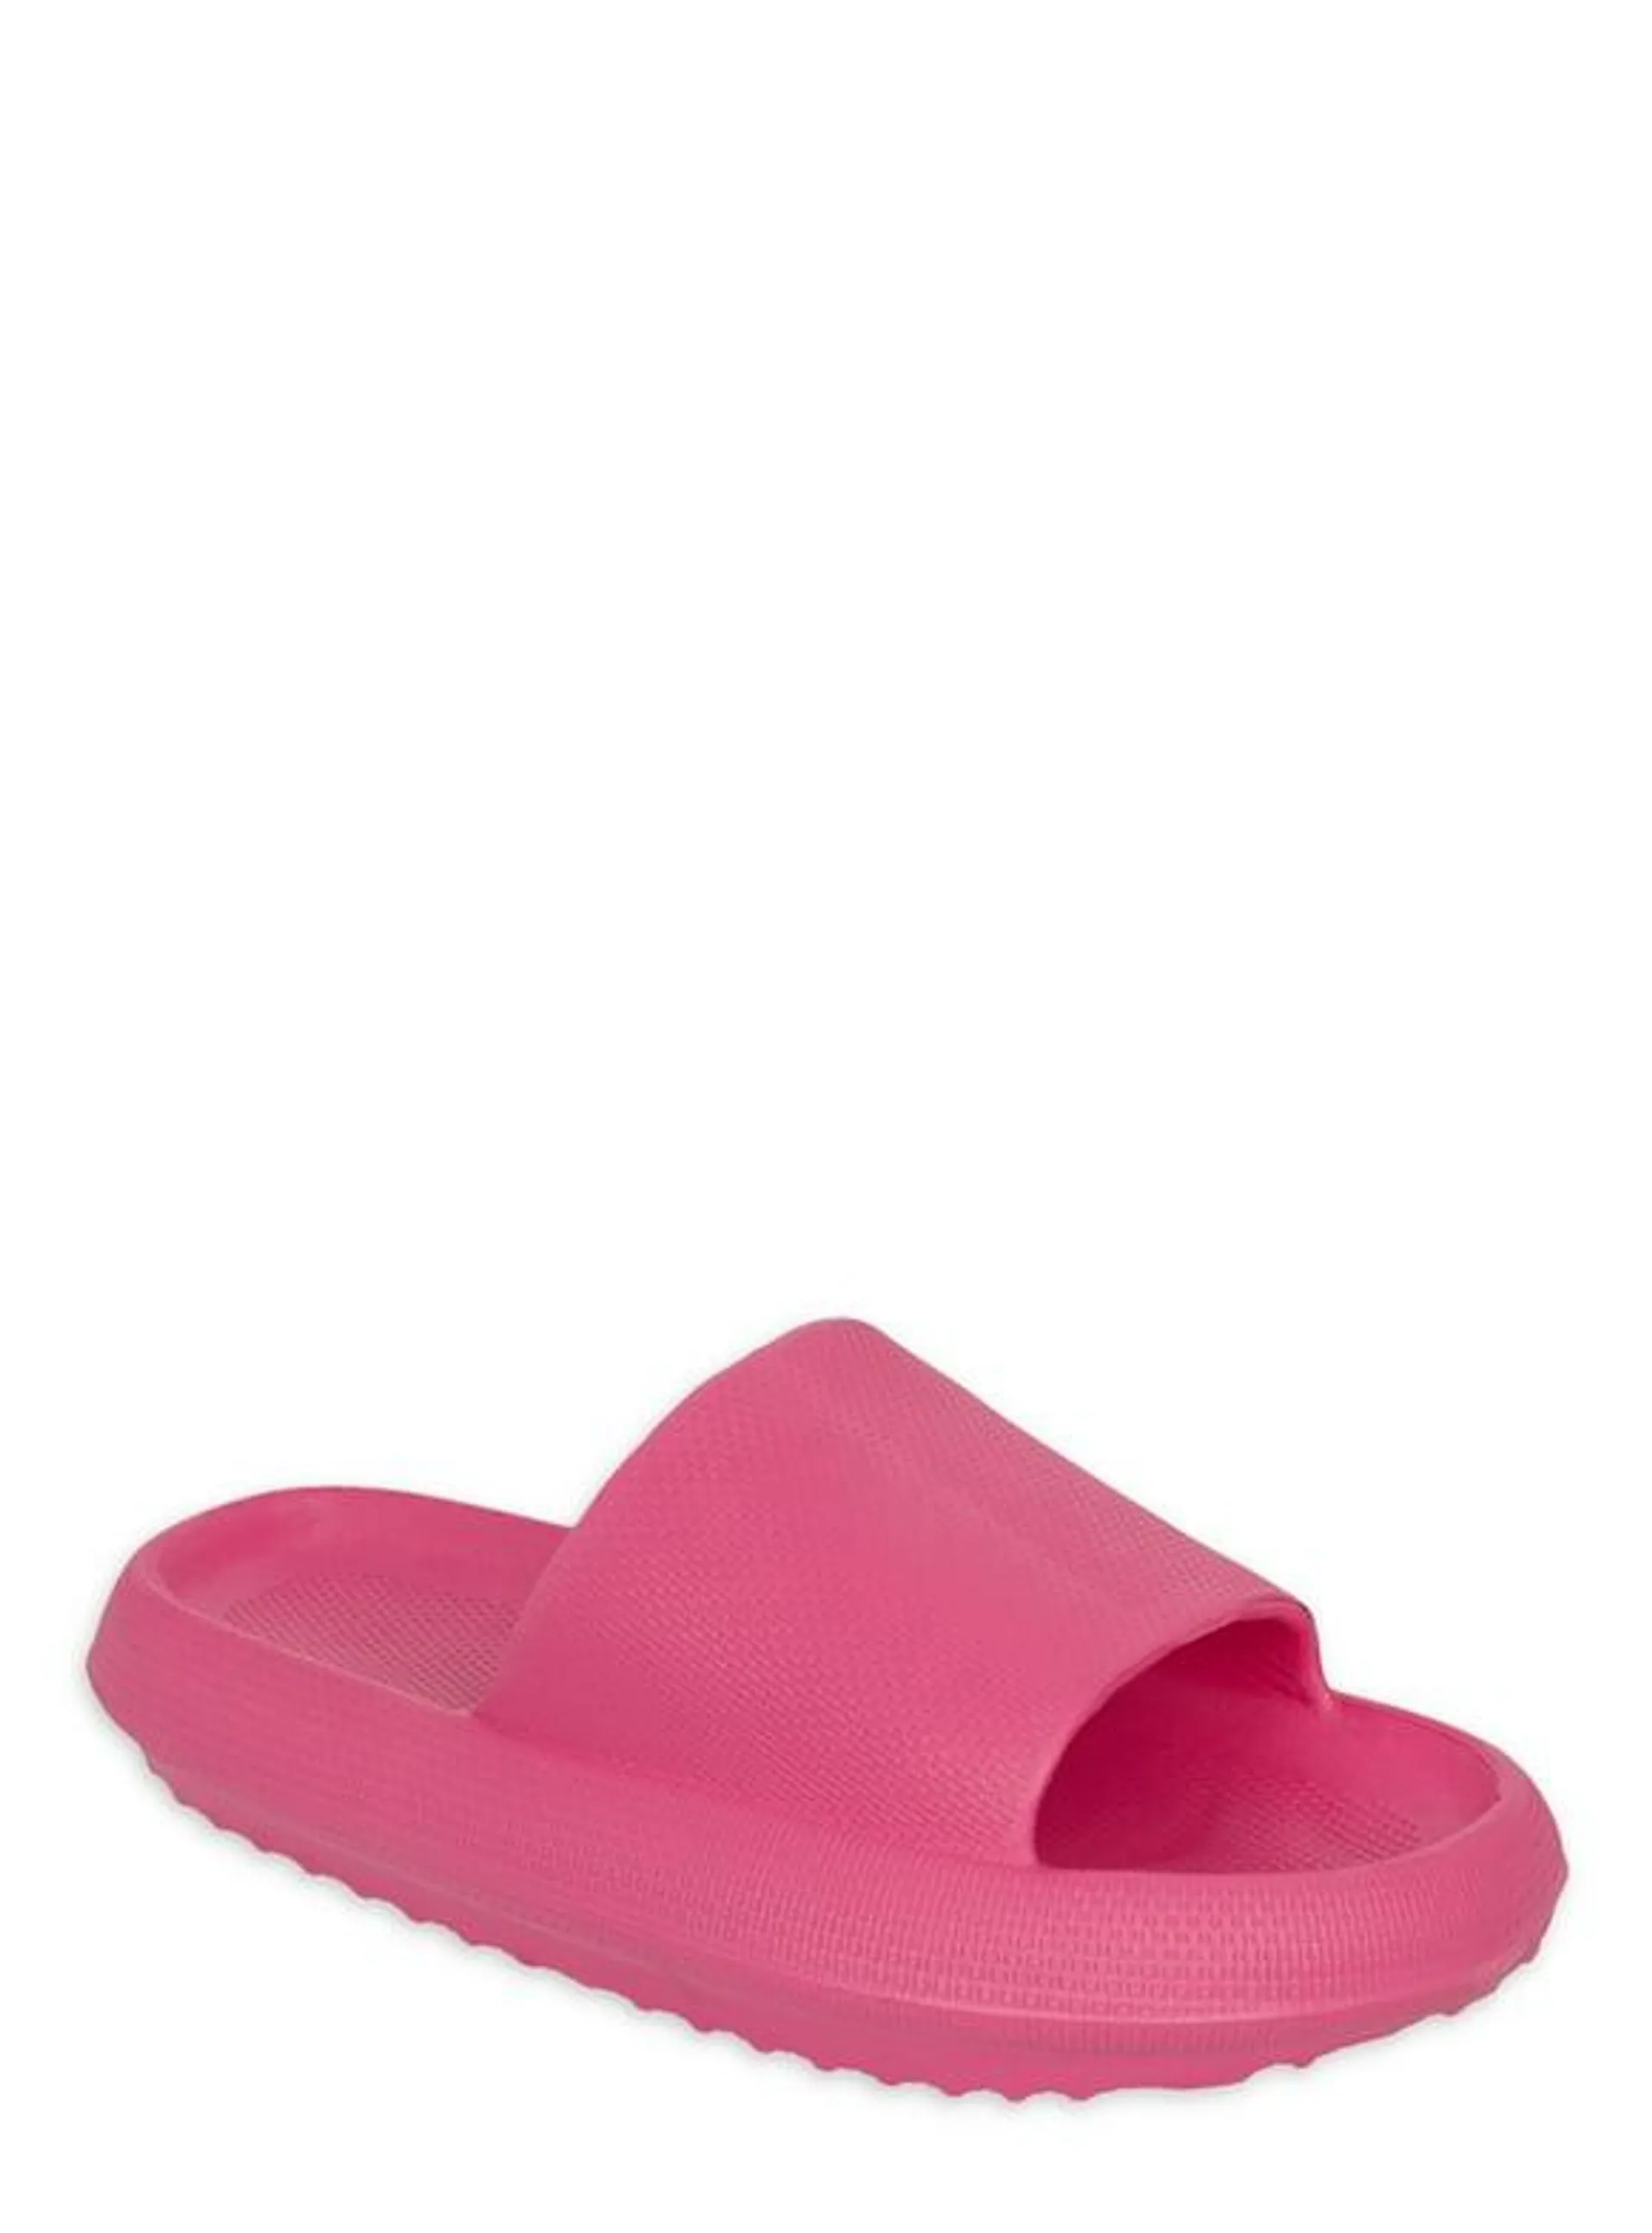 Mudd Women's Slide Sandal